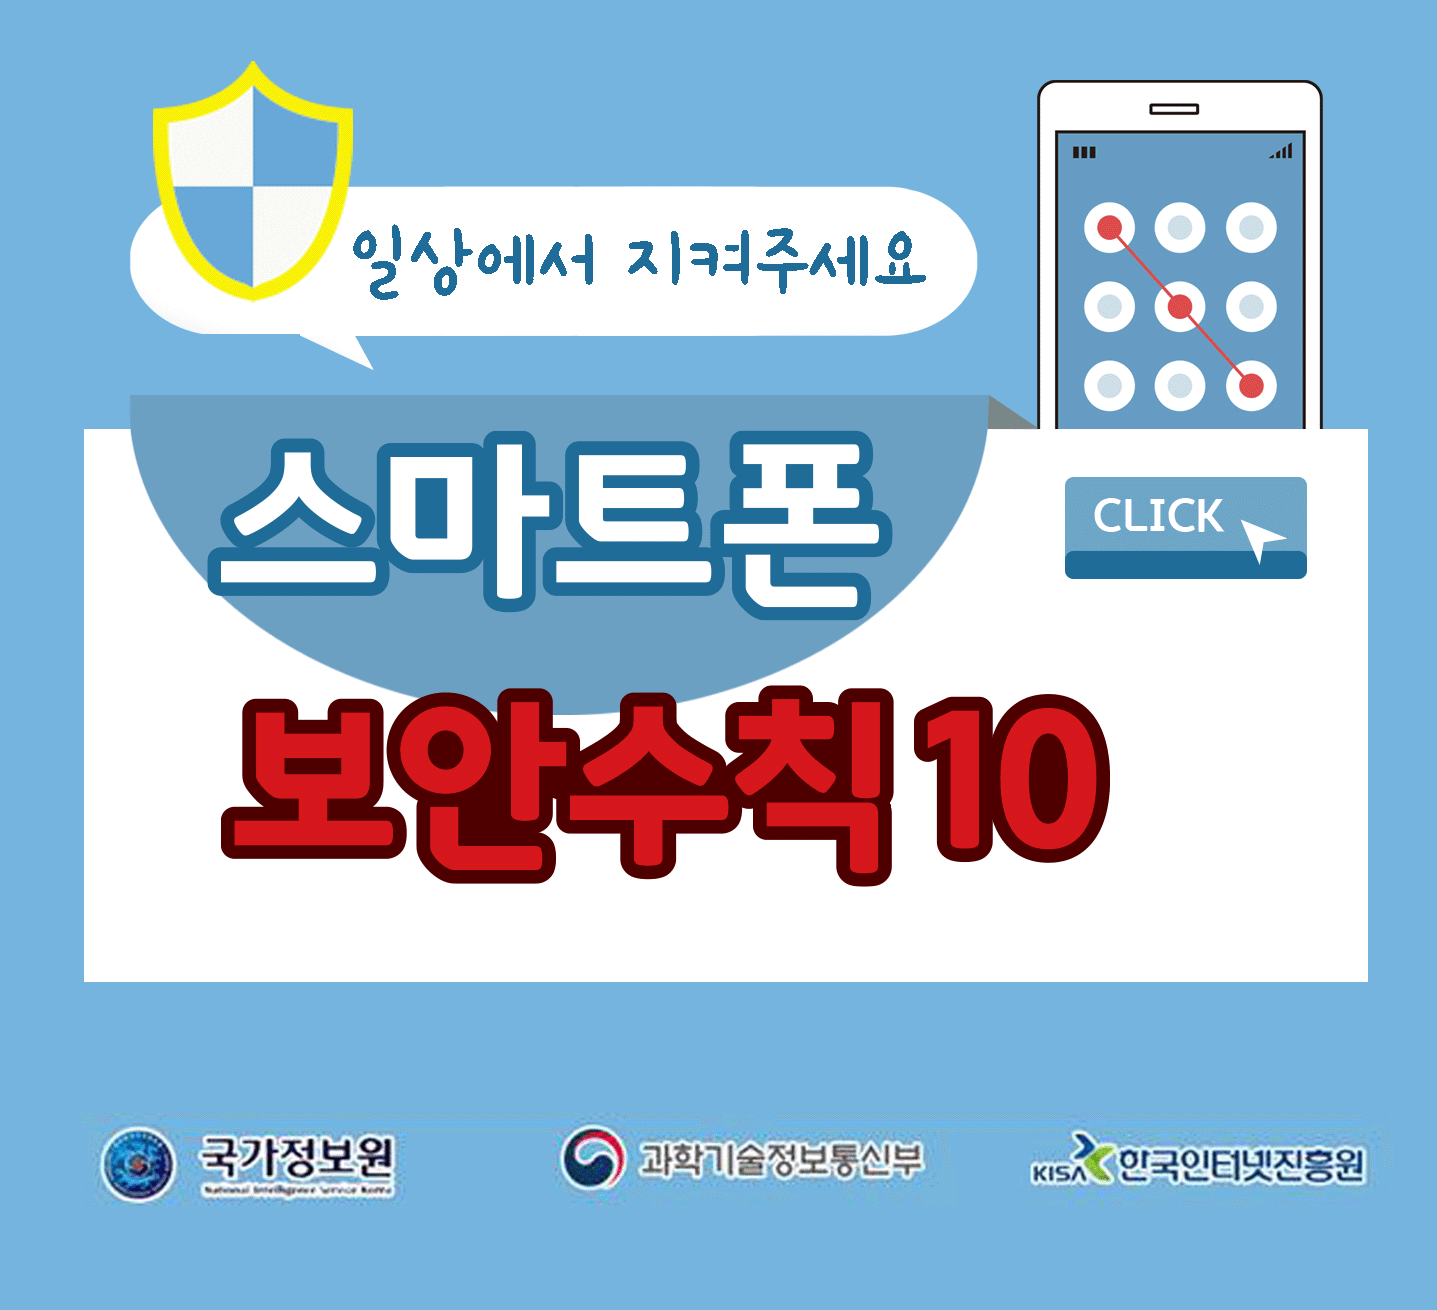 일상에서 지켜주세요
스마트폰 보안수칙 10 CLICK
국가정보원, 과학기술정보통신부, 한국인터넷진흥원;jsessionid=EF13753281B661542C371257917E112A